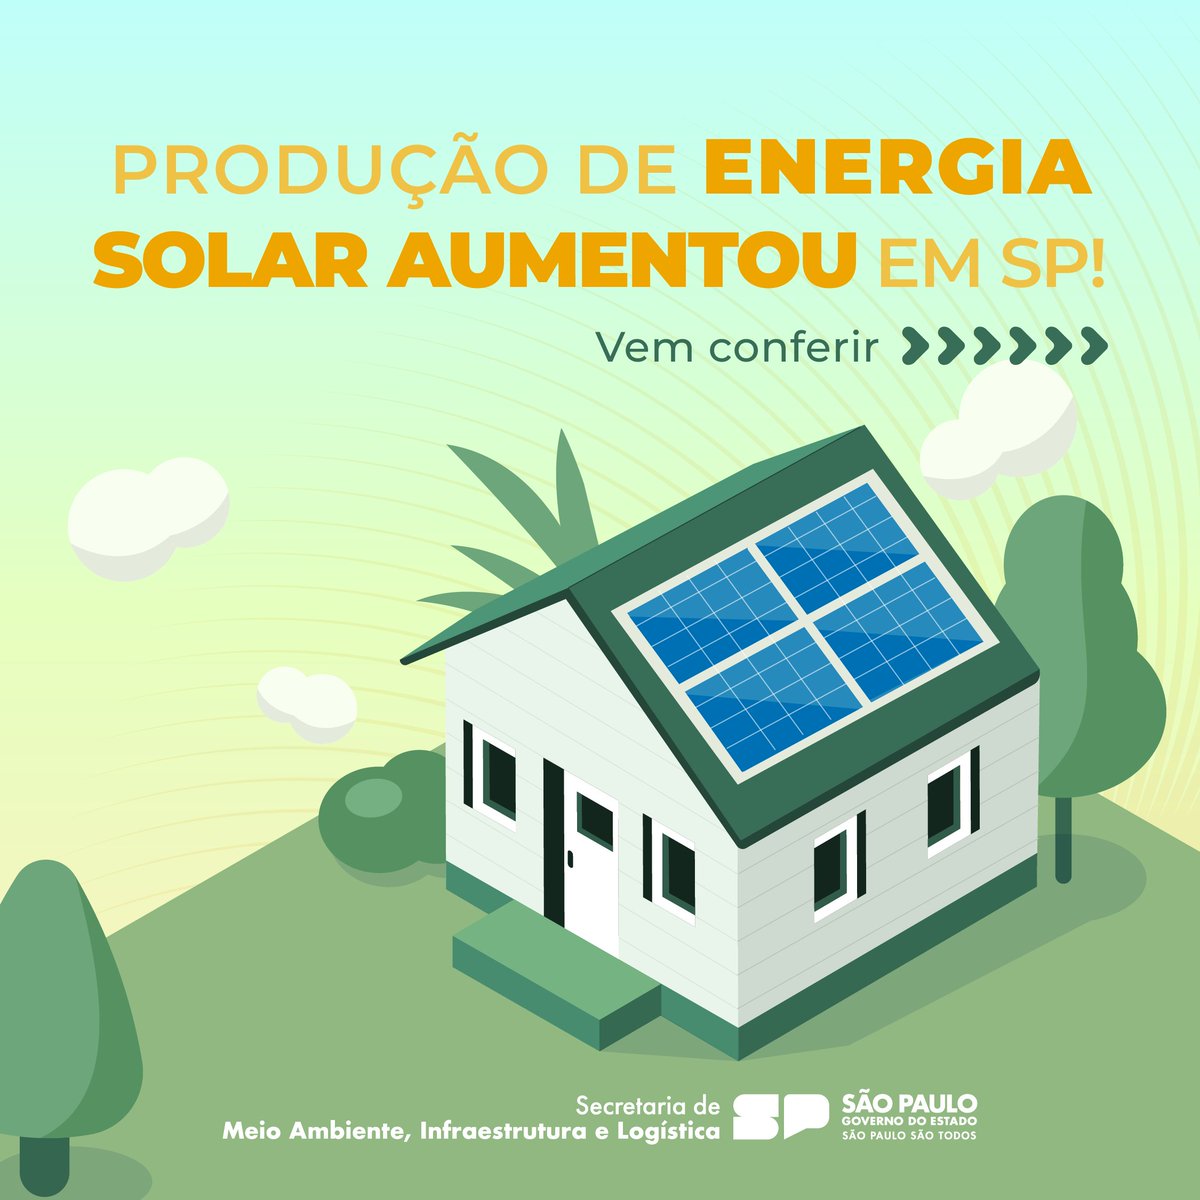 É isso mesmo! As fontes de energias renováveis estão cada vez mais presentes em São Paulo 💡

#energiasolar #energialimpa #meioambiente